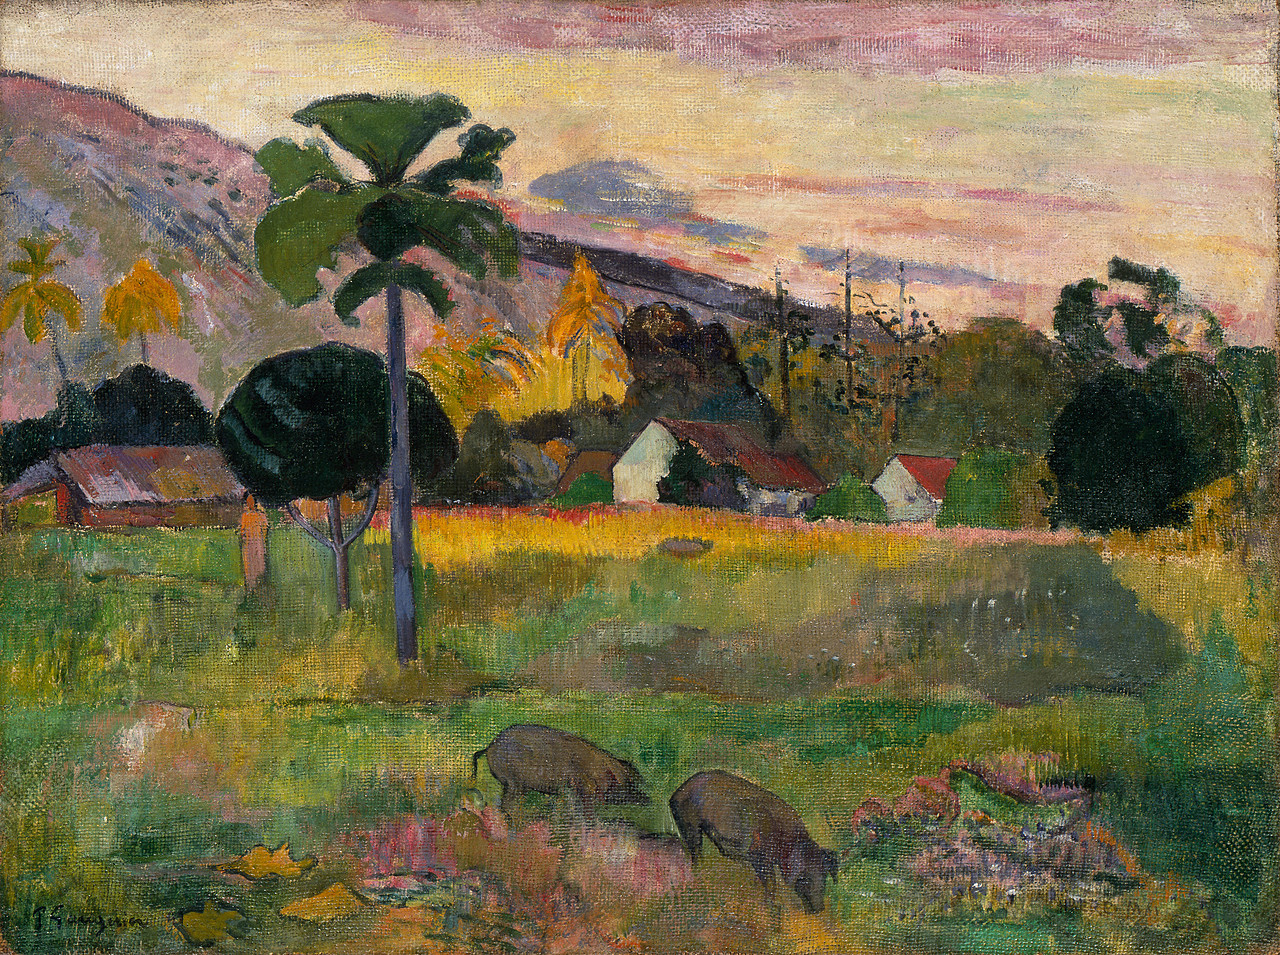 Paul Gauguin | Haere Mai | The Guggenheim Museums and Foundation